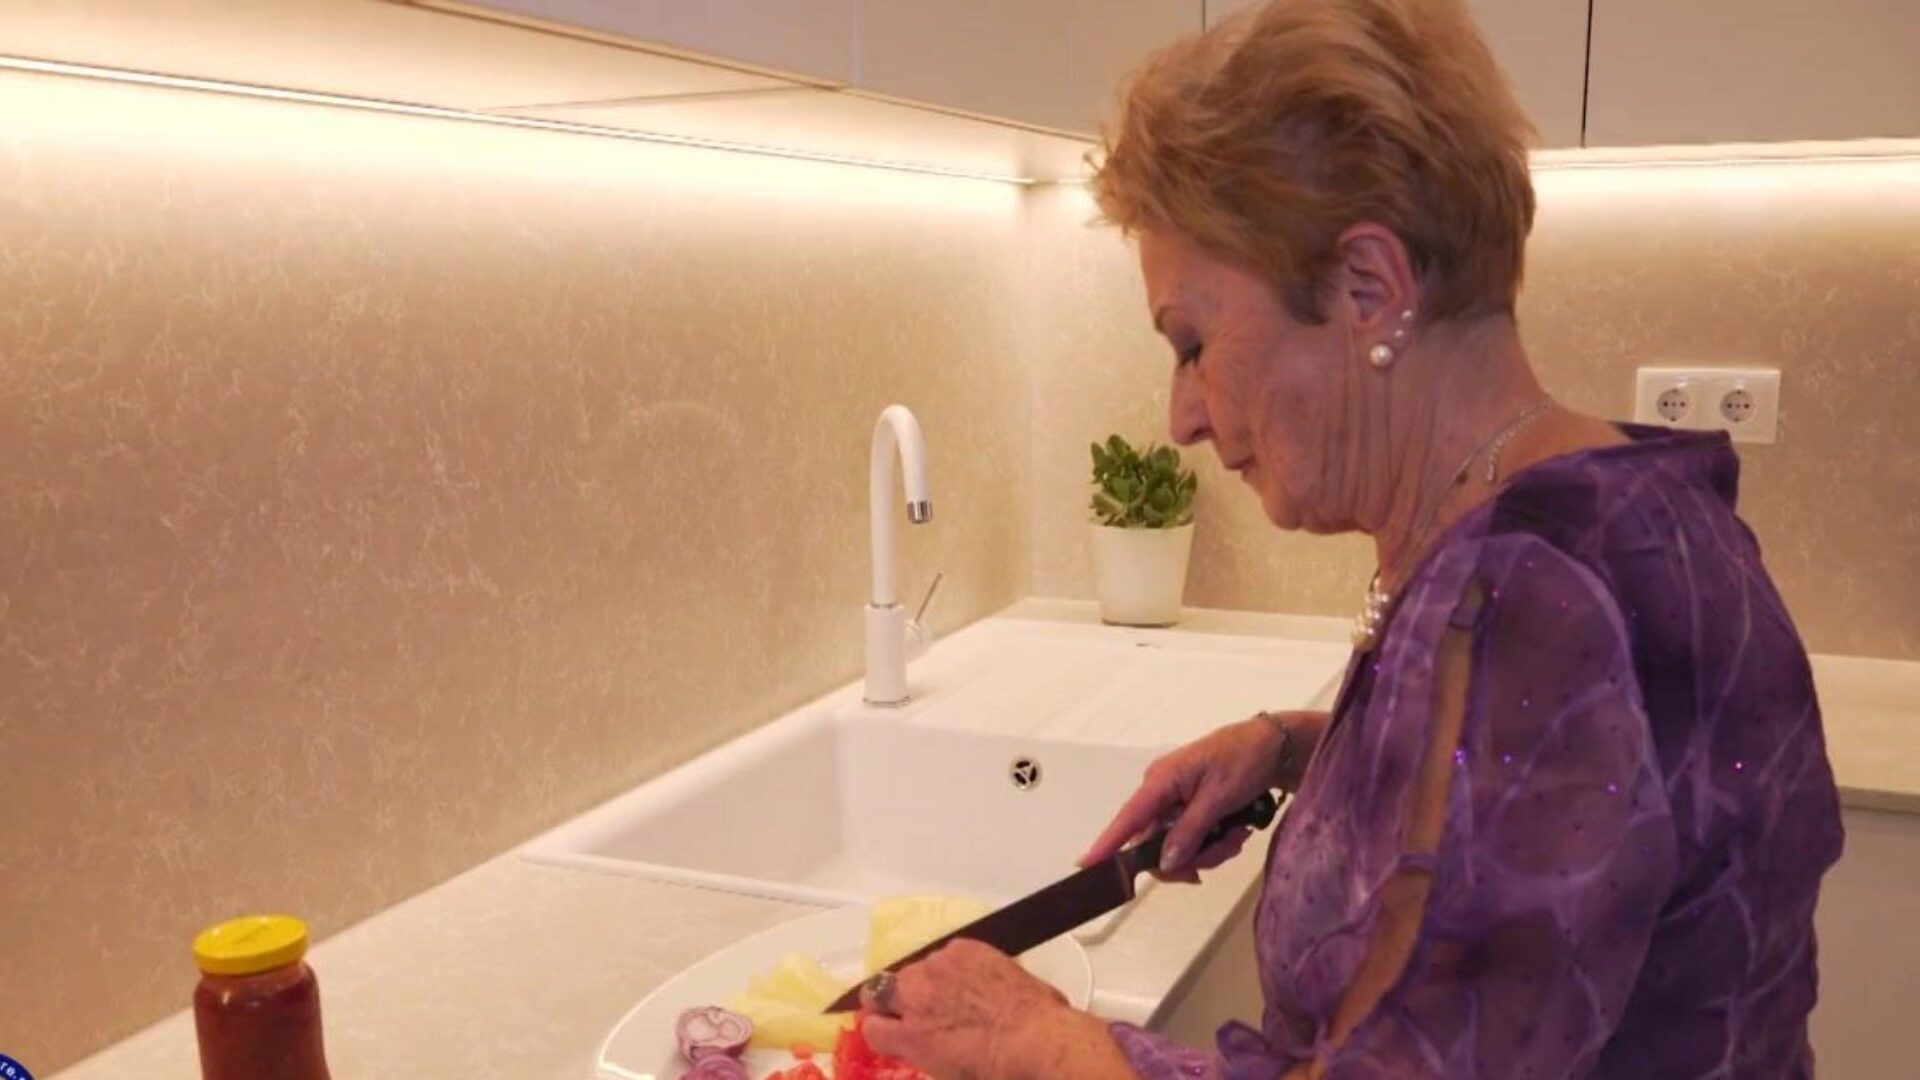 gammel behåret bedstemor kopulerer med stedsøn i køkkenet marita t 72